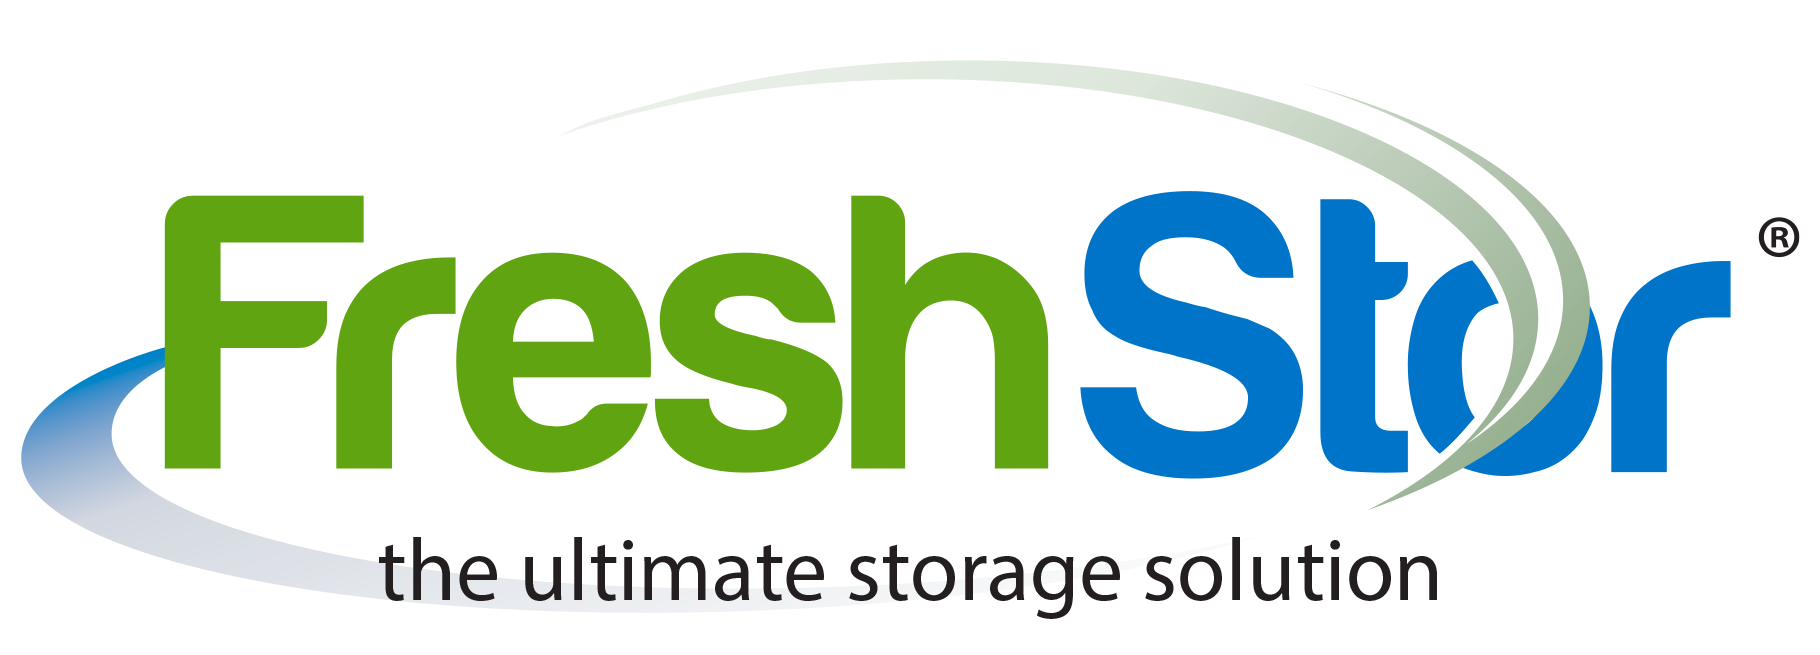 FreshStor | plant extract storage